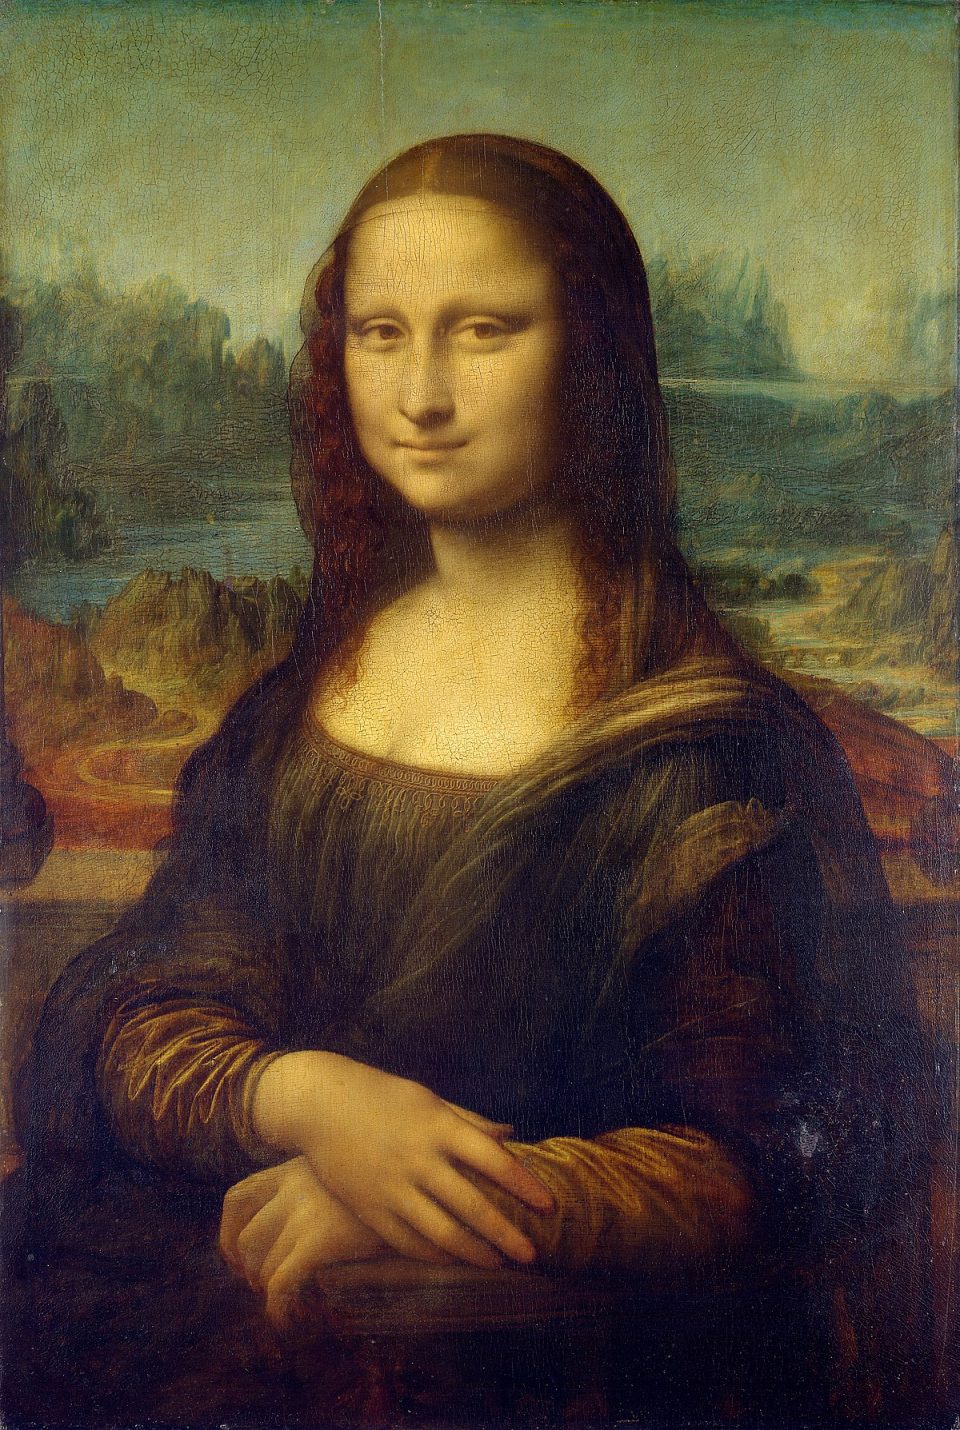 1200px Mona Lisa by Leonardo da Vinci from C2RMF retouched 960x1430 - 5 քիչ հայտնի փաստեր Լեոնարդո Դա Վինչիի մասին, որ գուցե չգիտեք